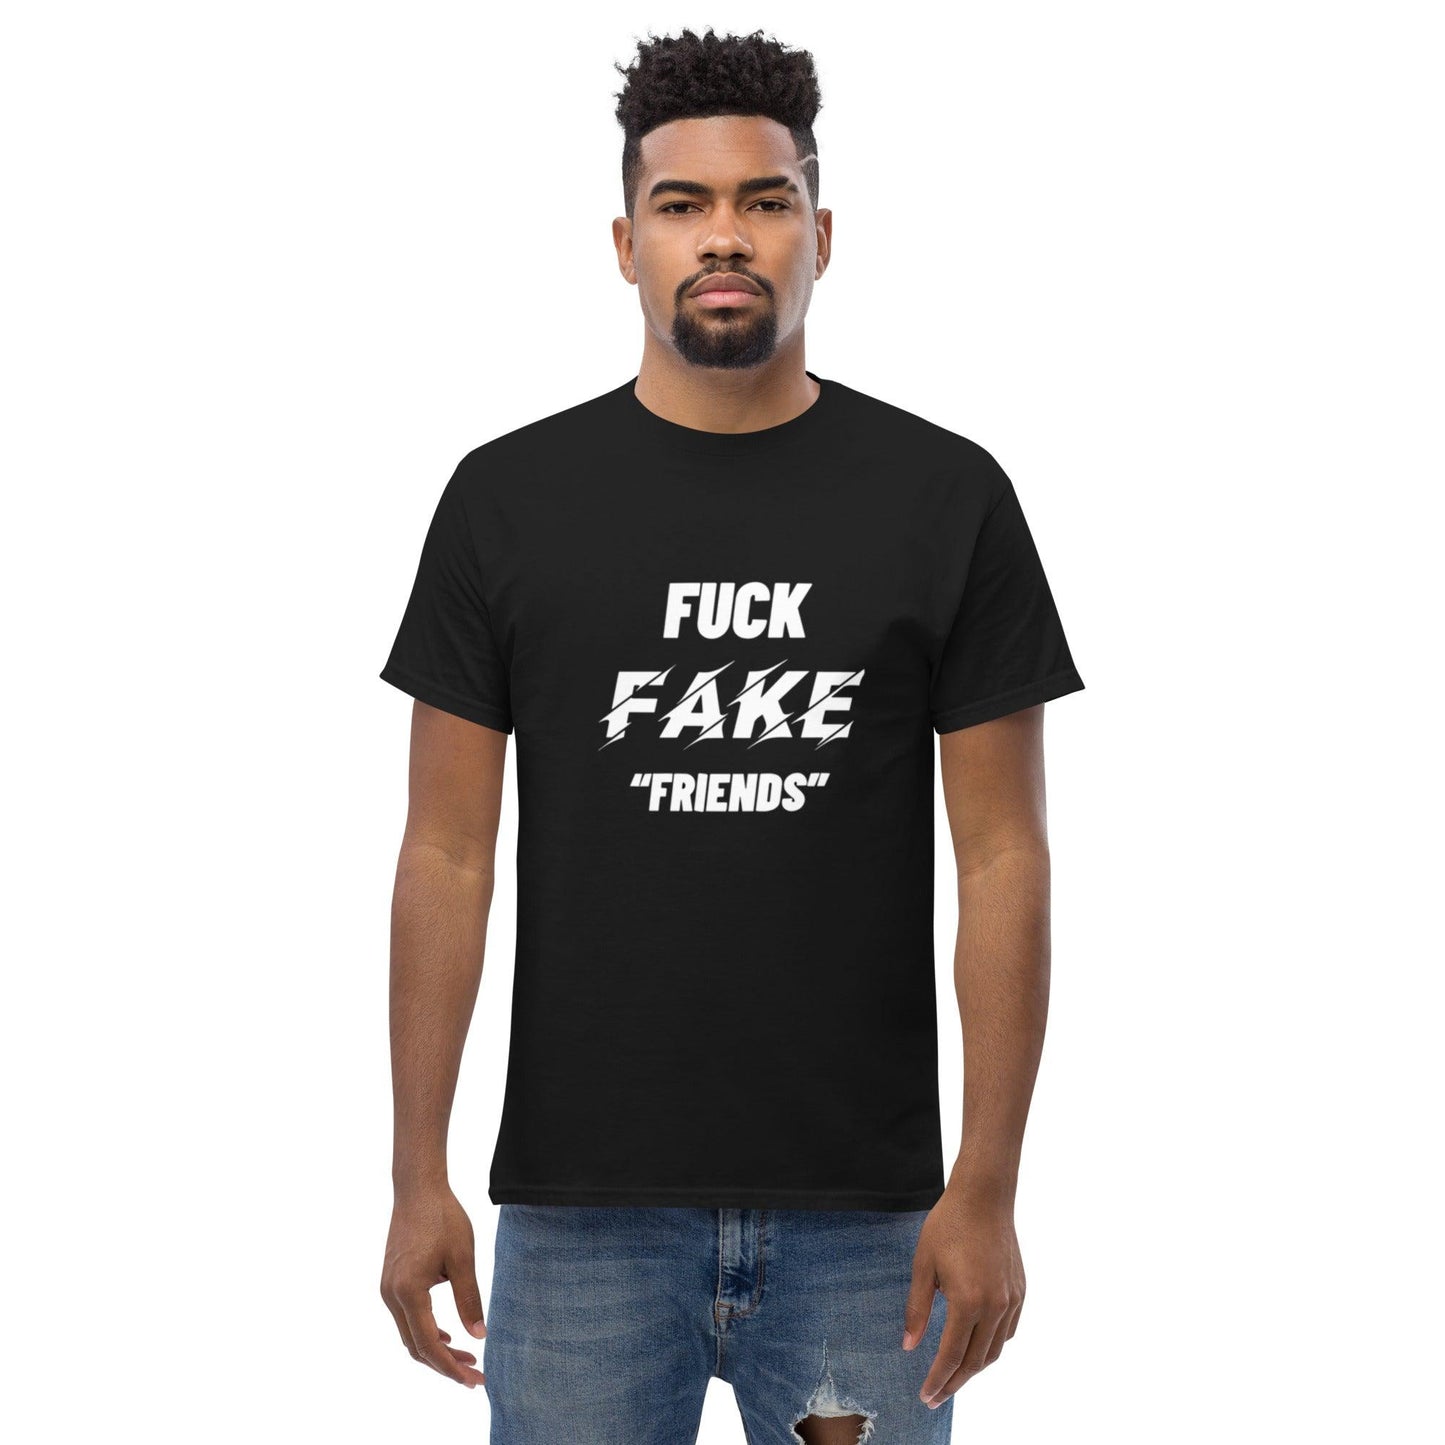 F*CK FAKE FRIEND - Anarchyca-clothing